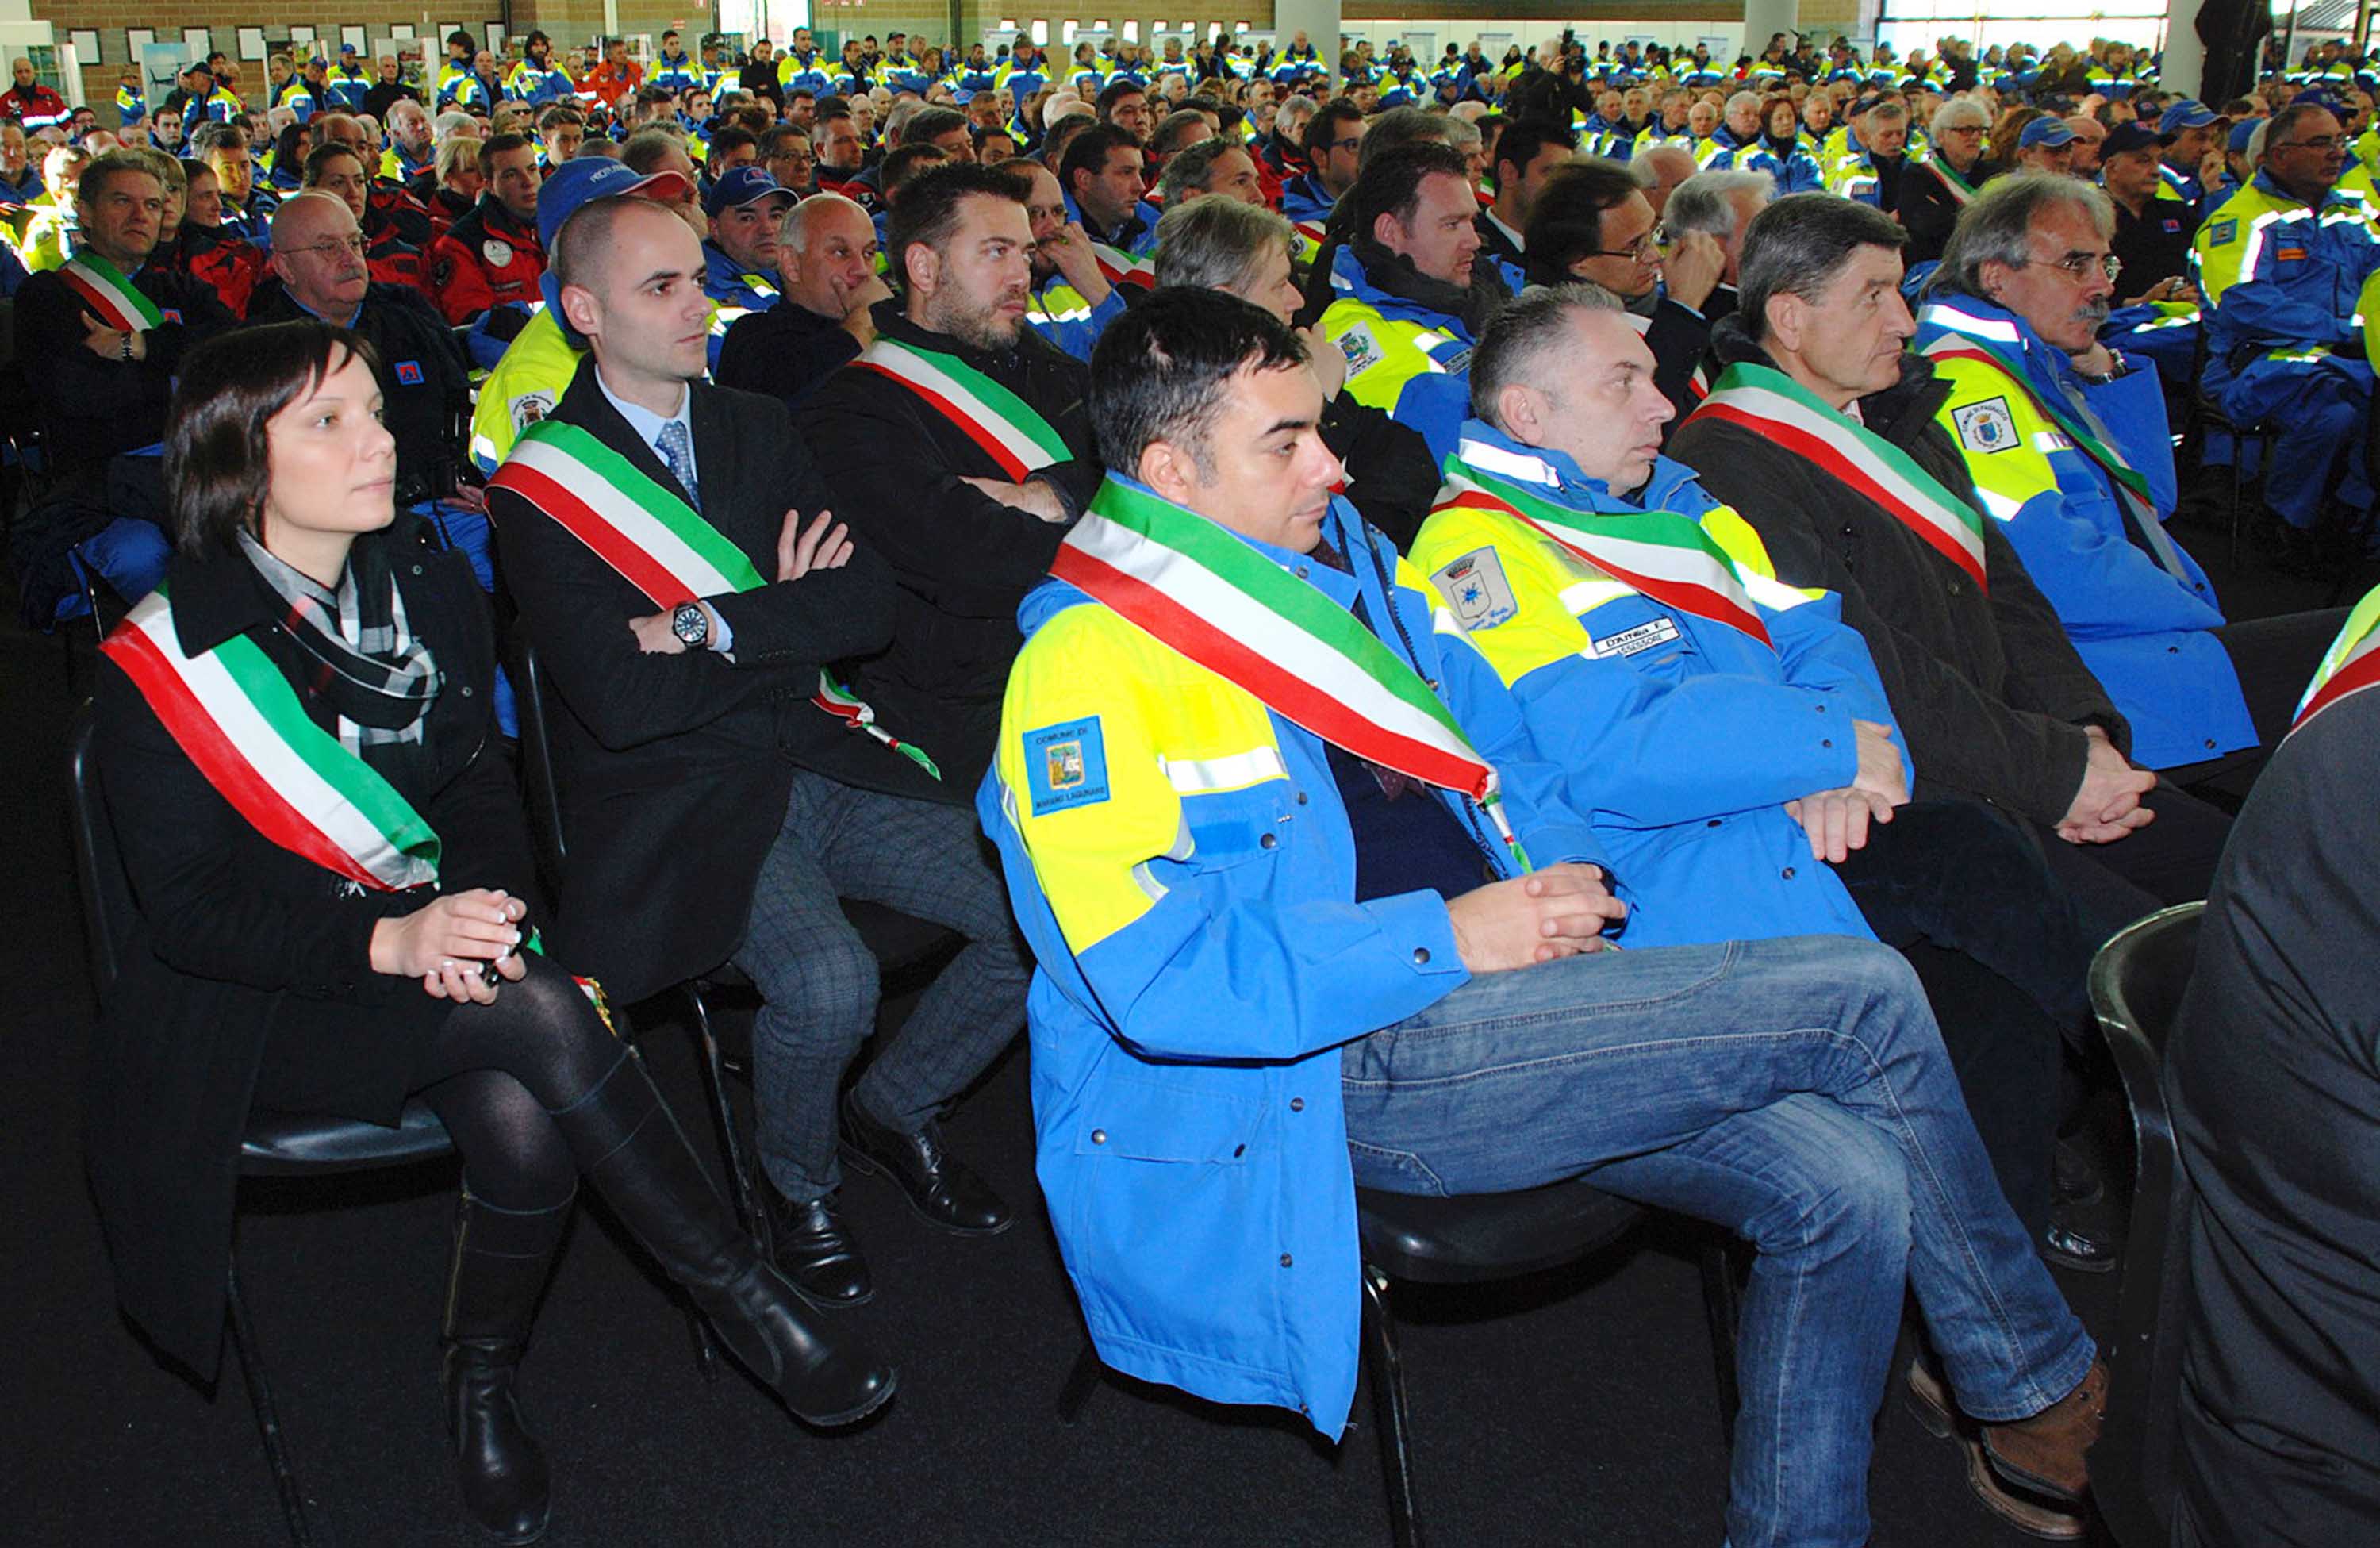 Sindaci e volontari alla XVI Giornata del Volontario di Protezione civile - Udine 07/12/2013
